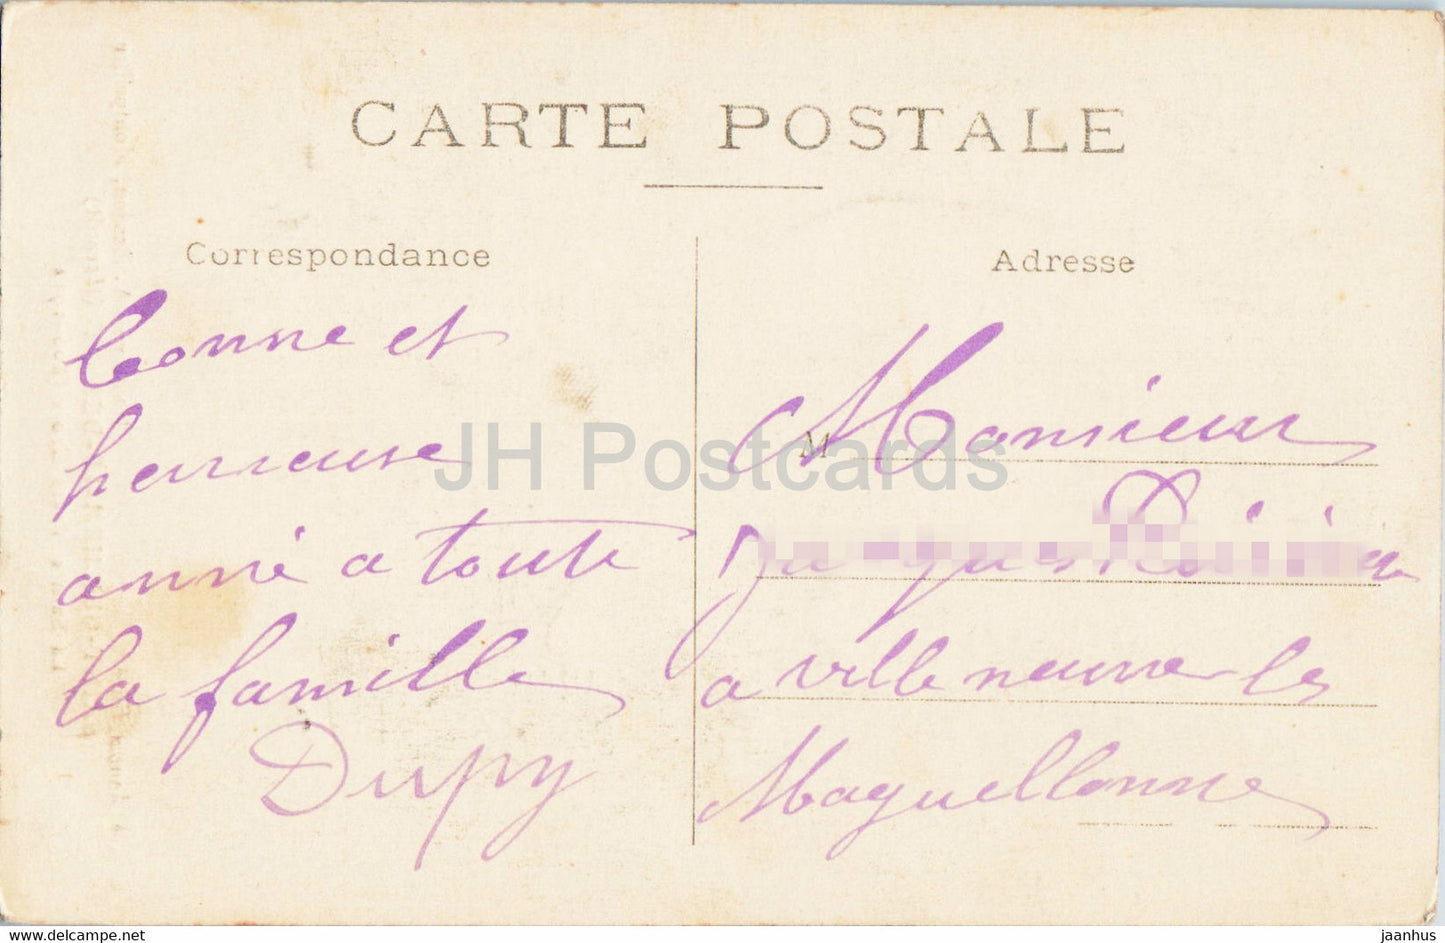 Saint Guilhem Le Desert - La Vraie Sainte Croix - alte Postkarte - Frankreich - gebraucht